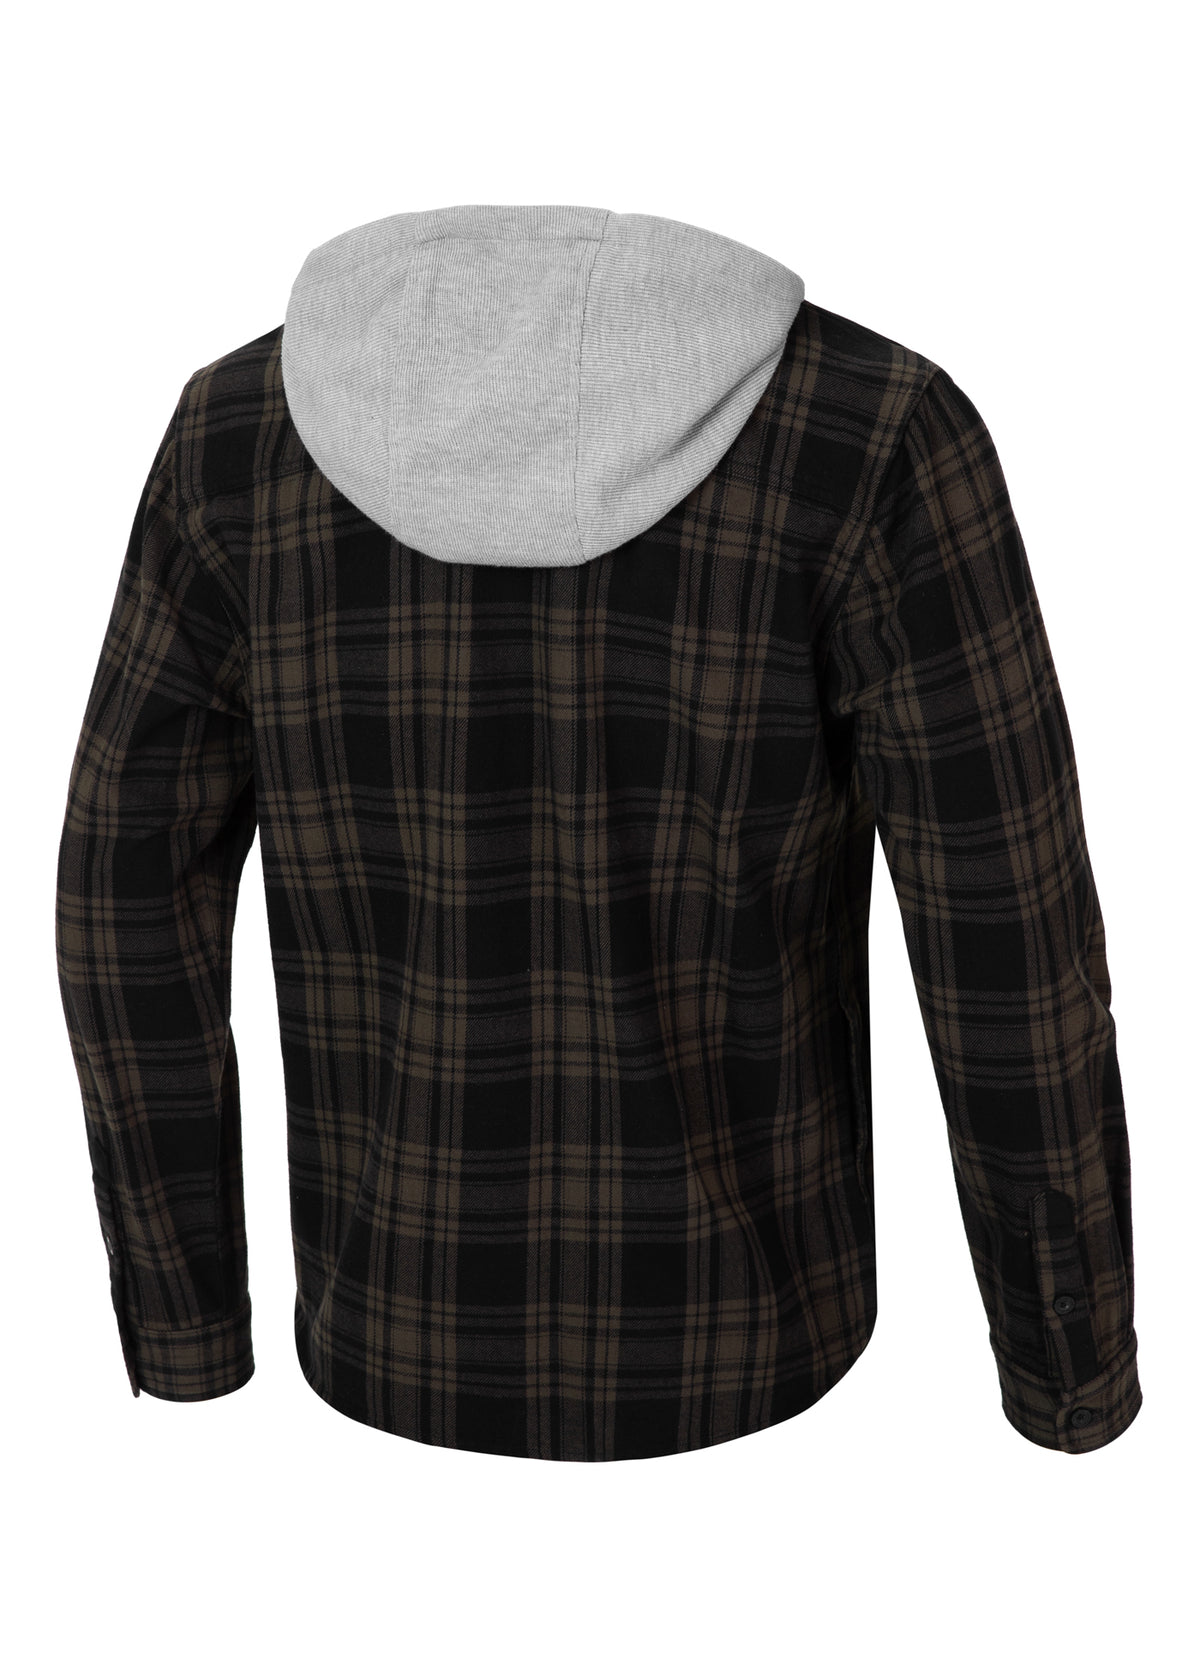 WOODSON Olive/Black Hooded Flannel Shirt